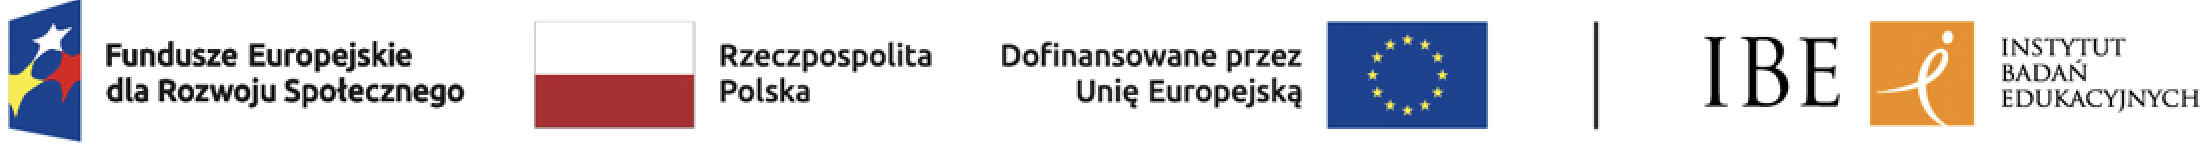 Logotypy od lewej: Fundusze Europejskie Wiedza Edukacja Rozwój, Rzeczypospolita Polska, Zintegrowany Rejestr Kwalifikacji, Unia Europejska Europejski Fundusz Społeczny